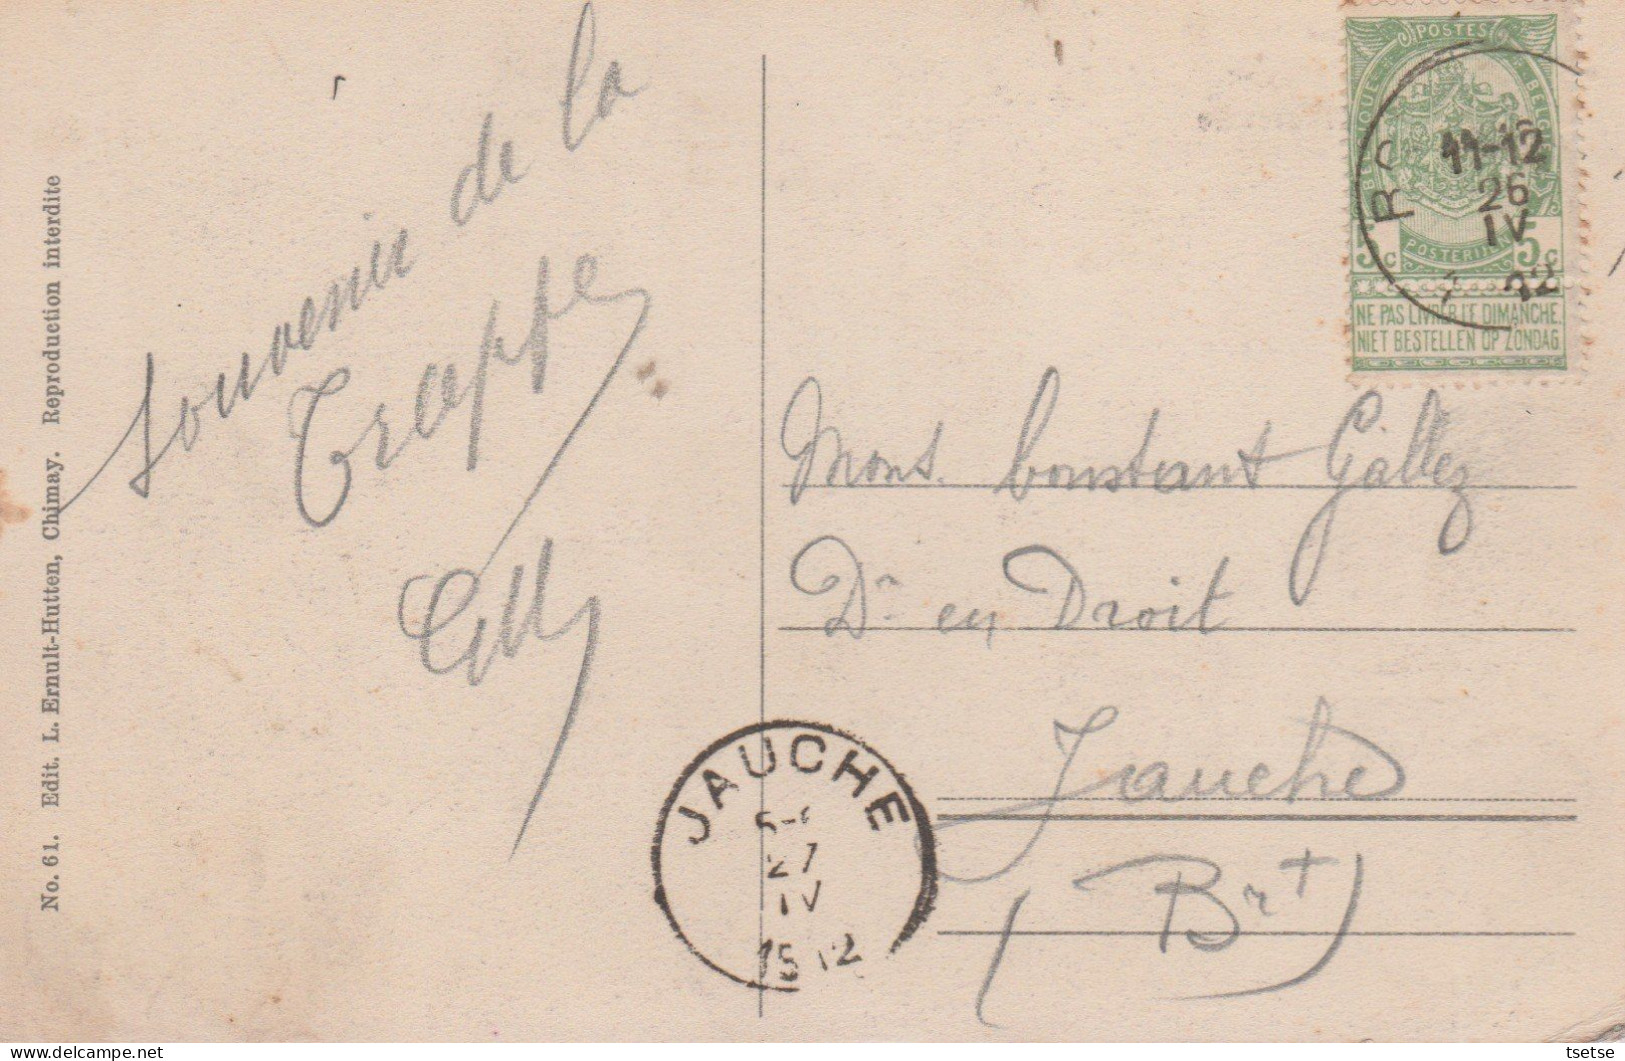 Chimay - Abbaye De La Trappe - La Brasserie , La Fromagerie Et Le Réfectoire - 1912 ( Voir Verso ) - Chimay